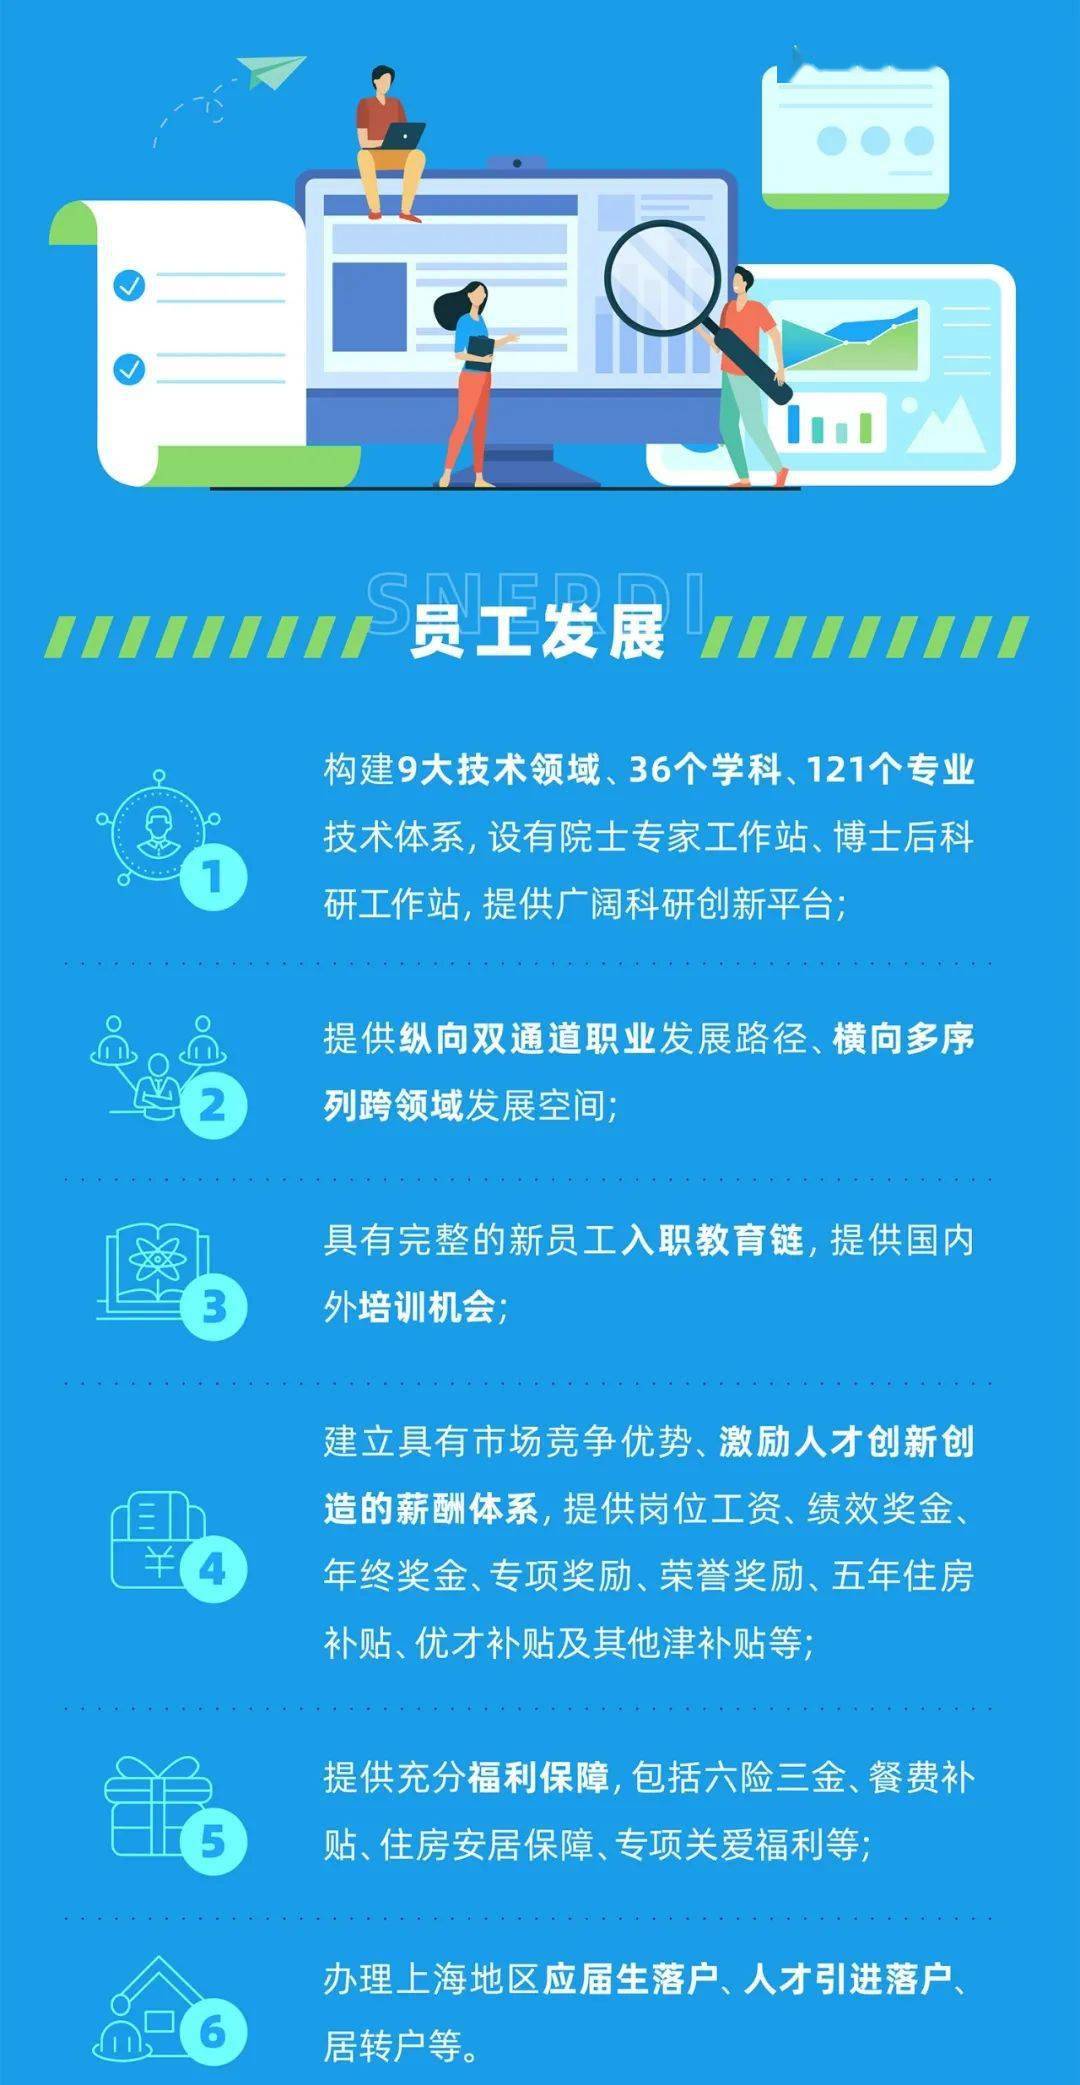 核电 招聘_第八届中国核电信息技术高峰论坛于8月5日 6日在上海成功举办(2)